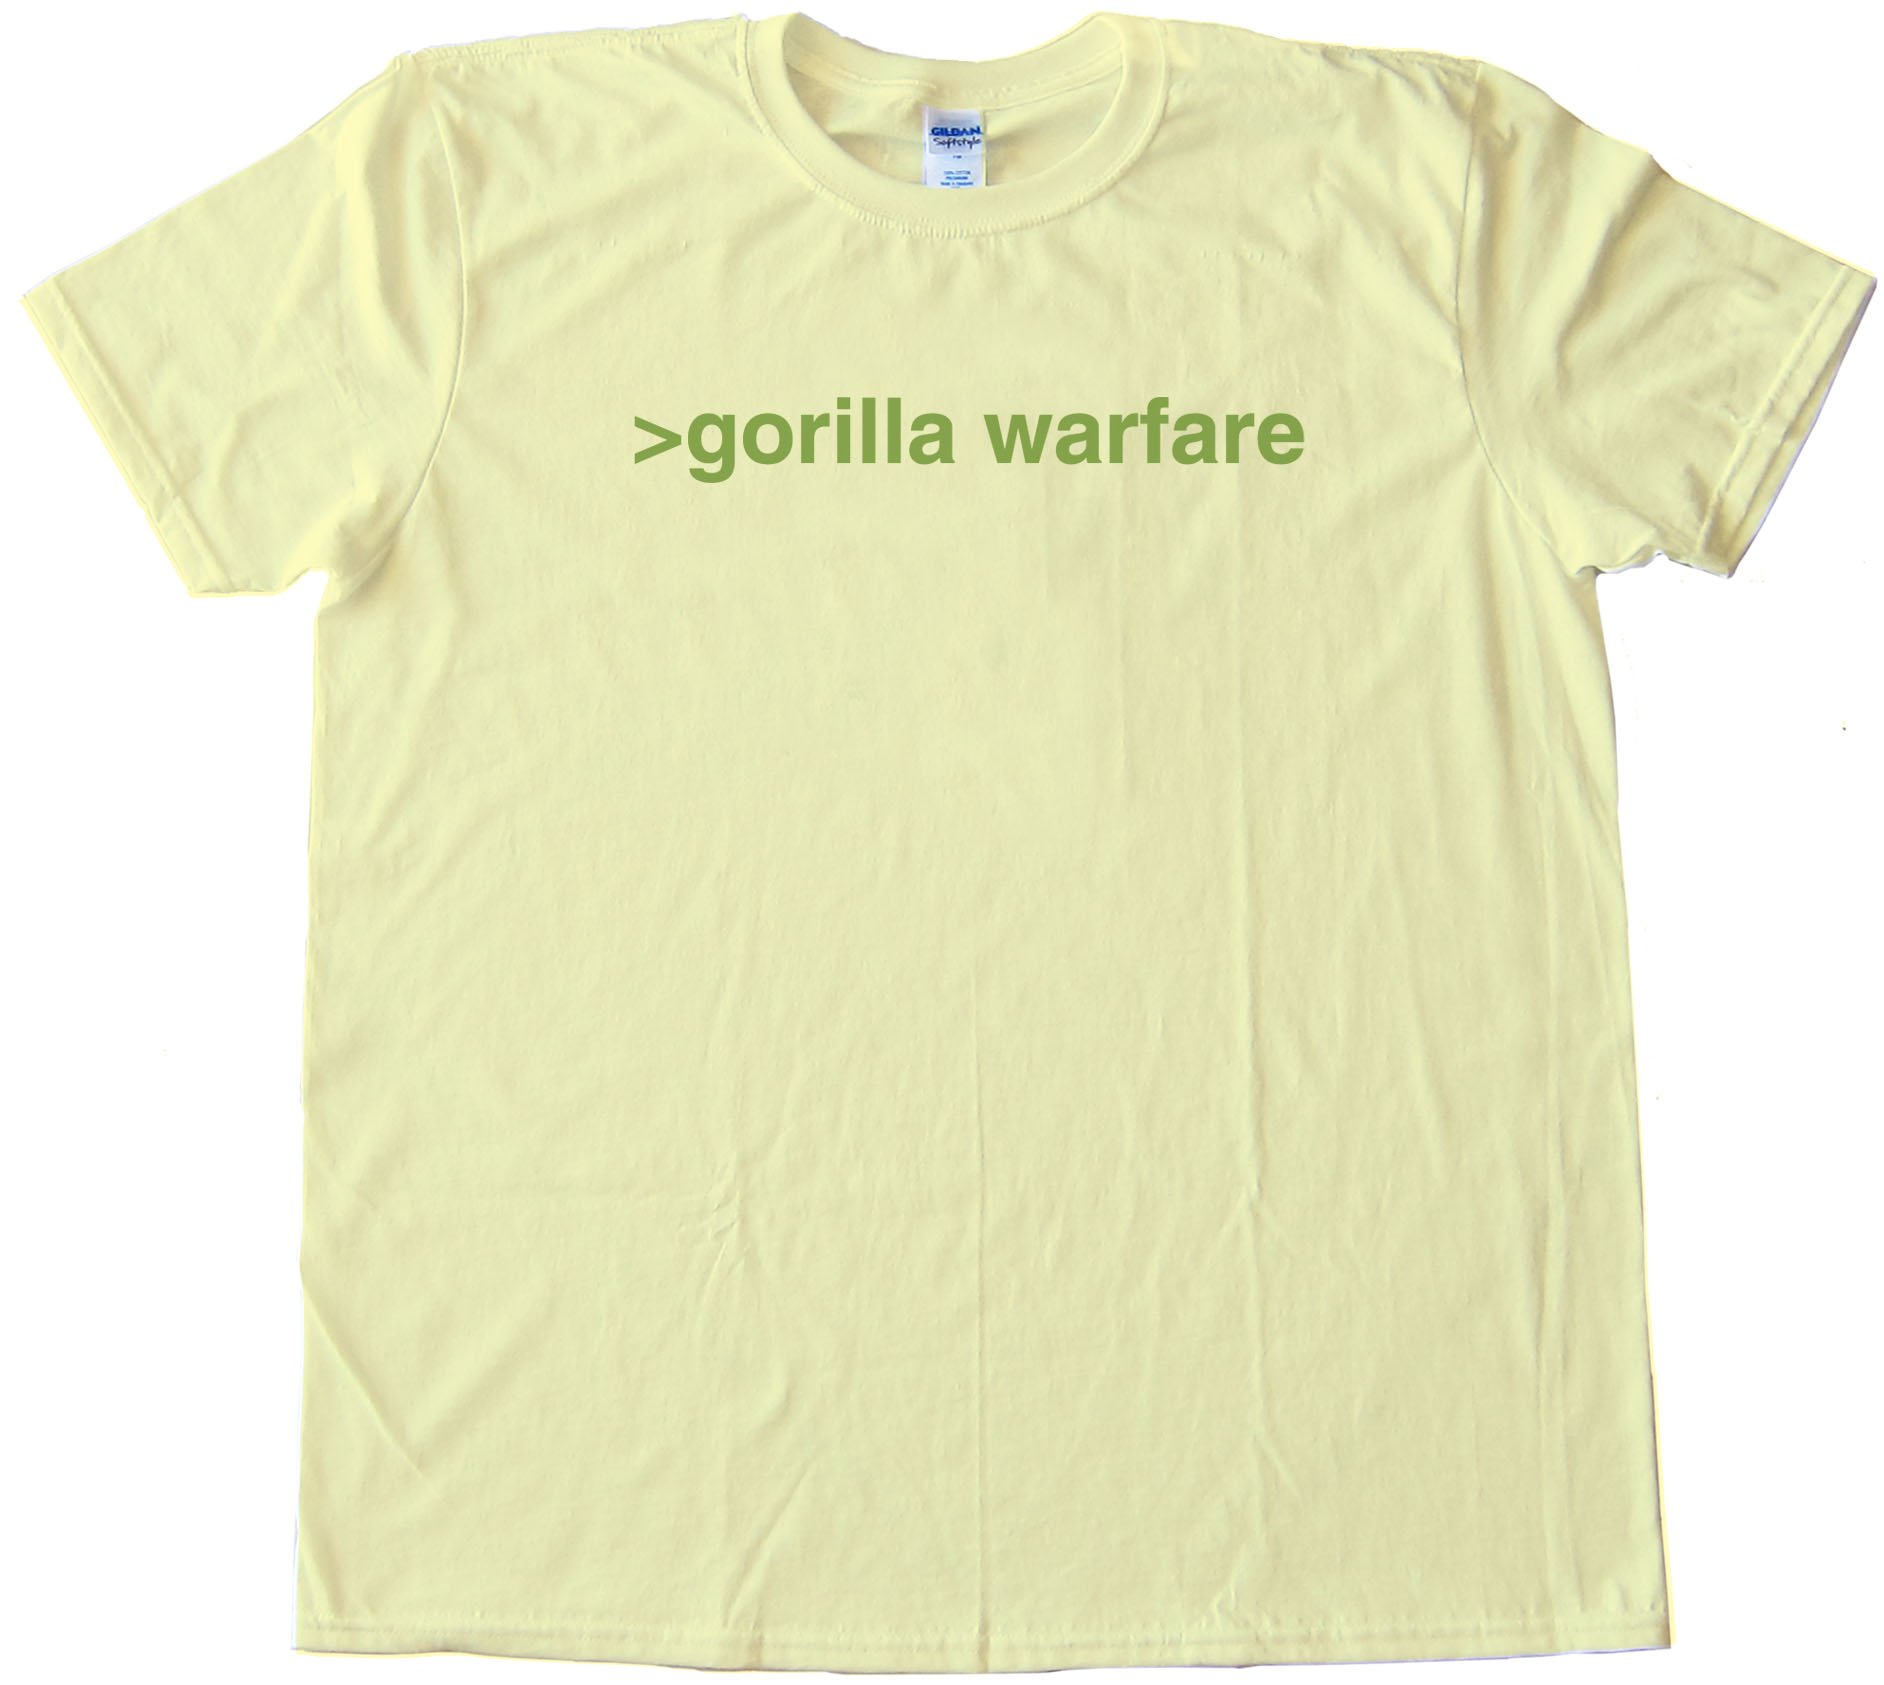 Gorilla Warfare - Tee Shirt